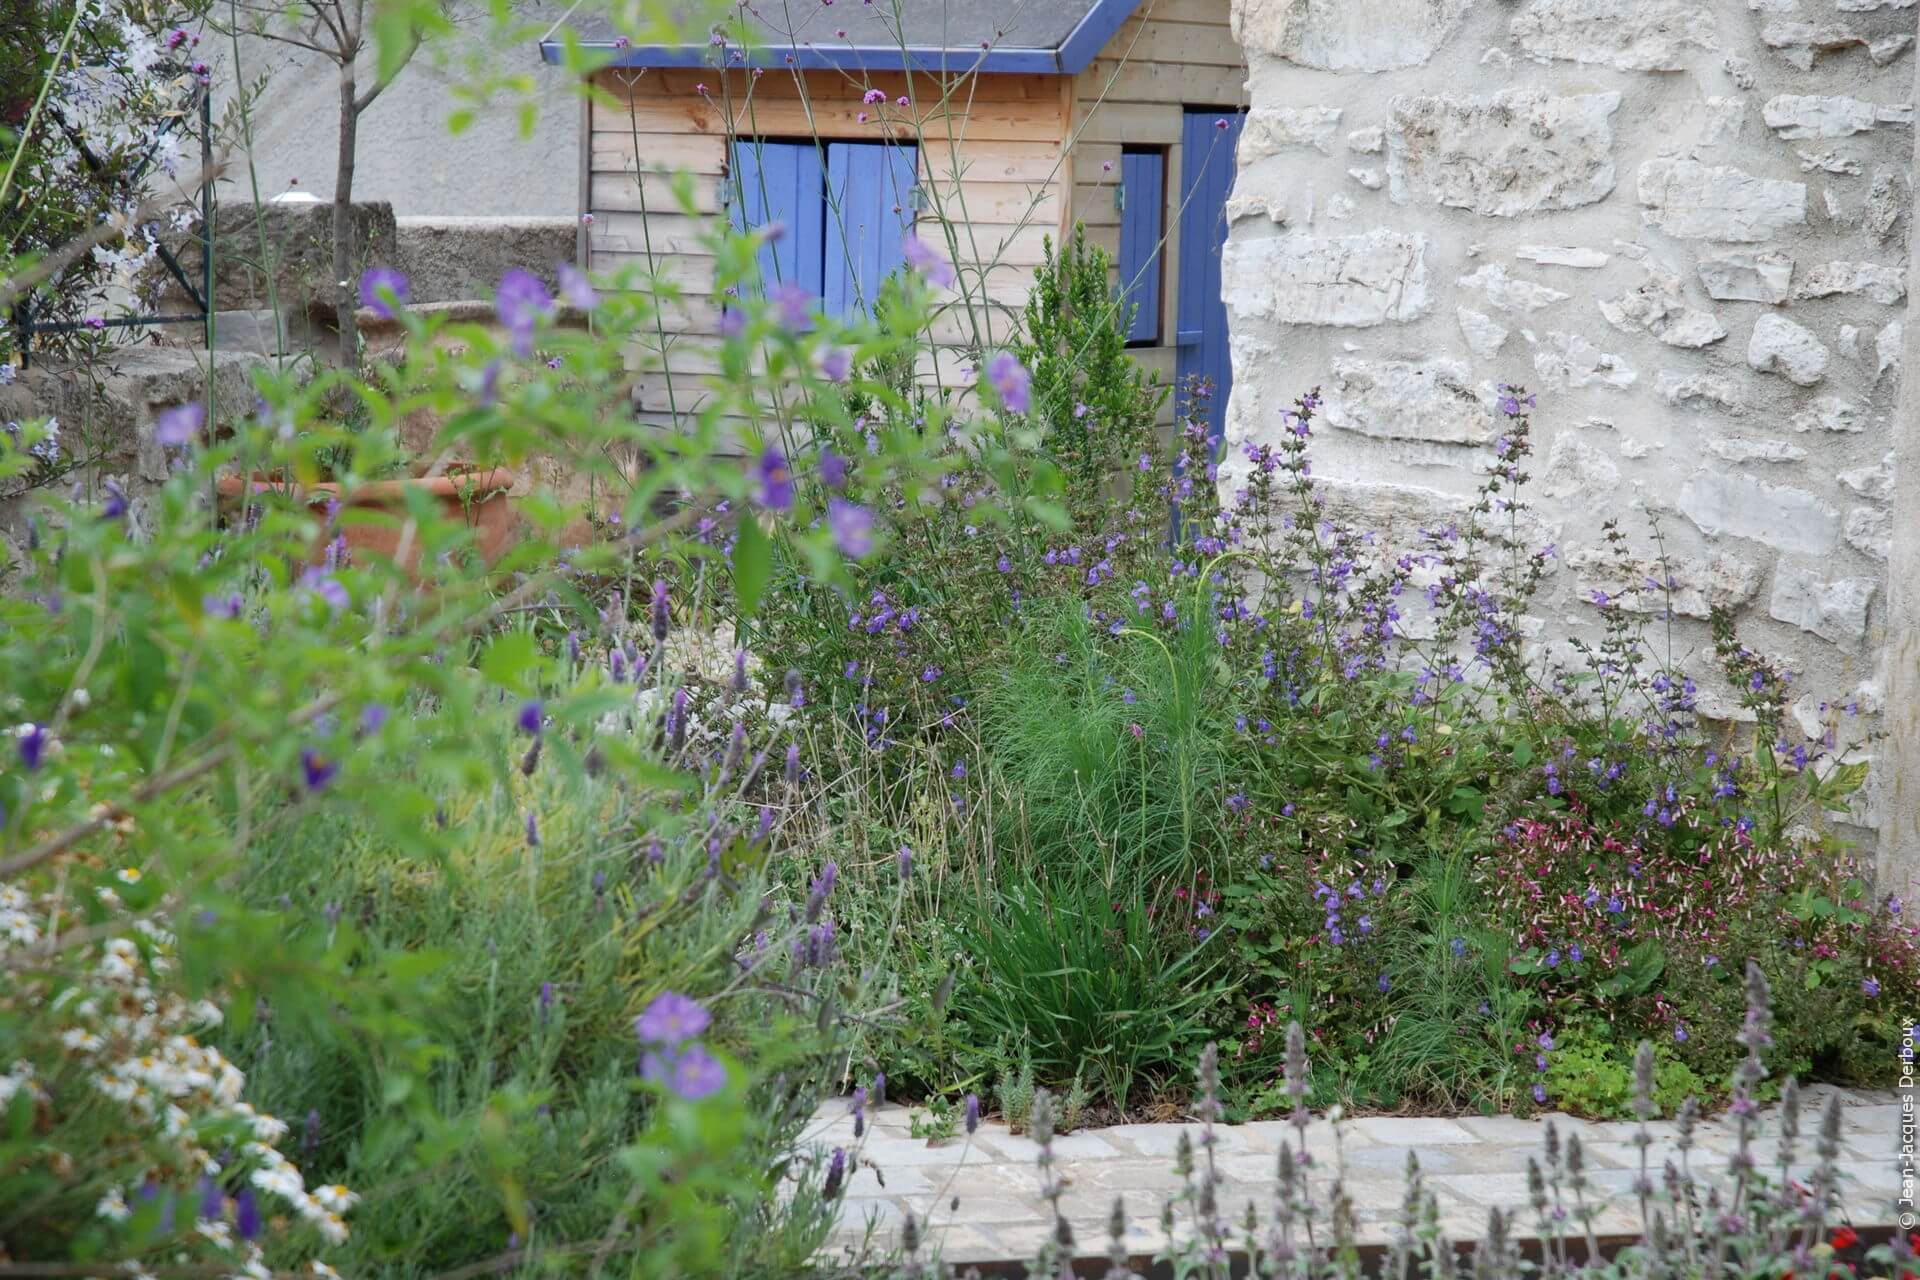 Cabane au jardin, volets bleus, fleurs mauve, esprit champêtre.